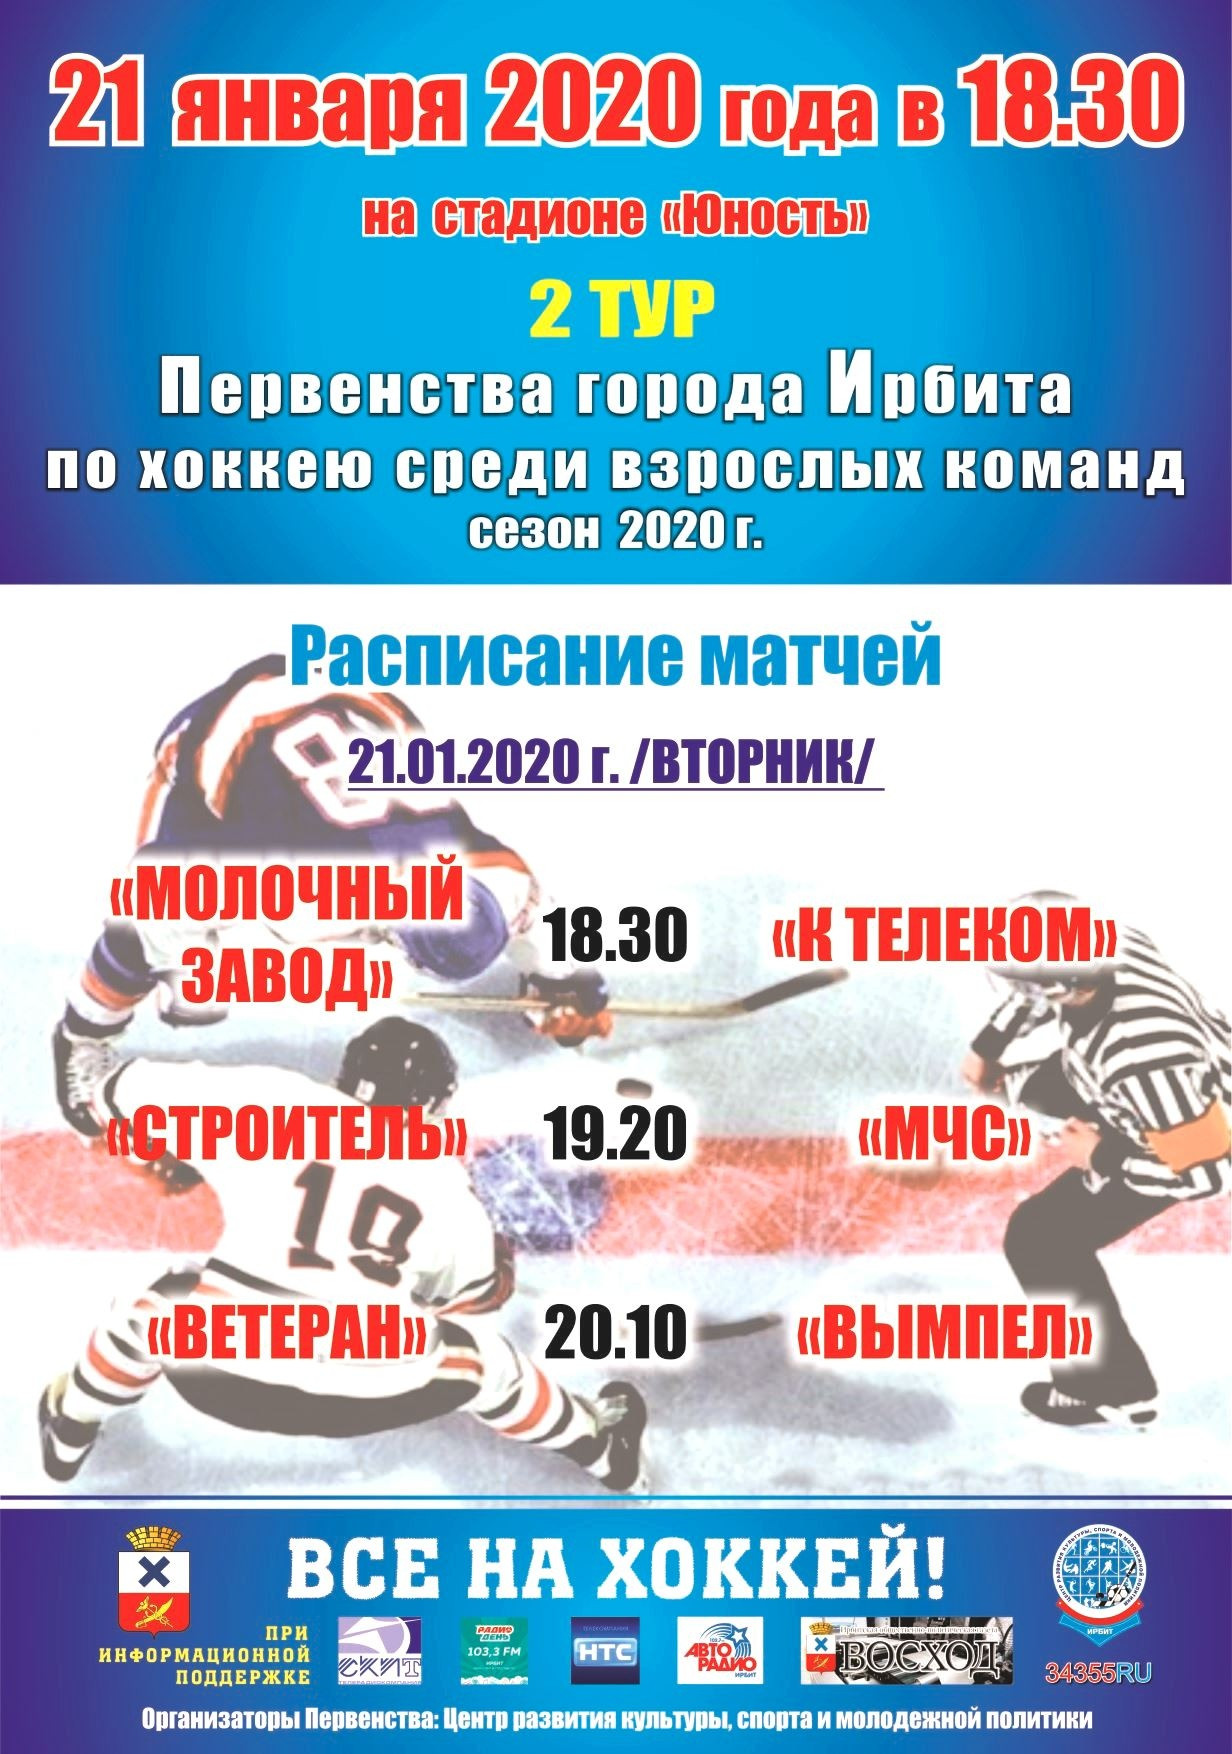 2 тур Первенства города Ирбита по хоккею среди взрослых команд (сезон 2020 г.)